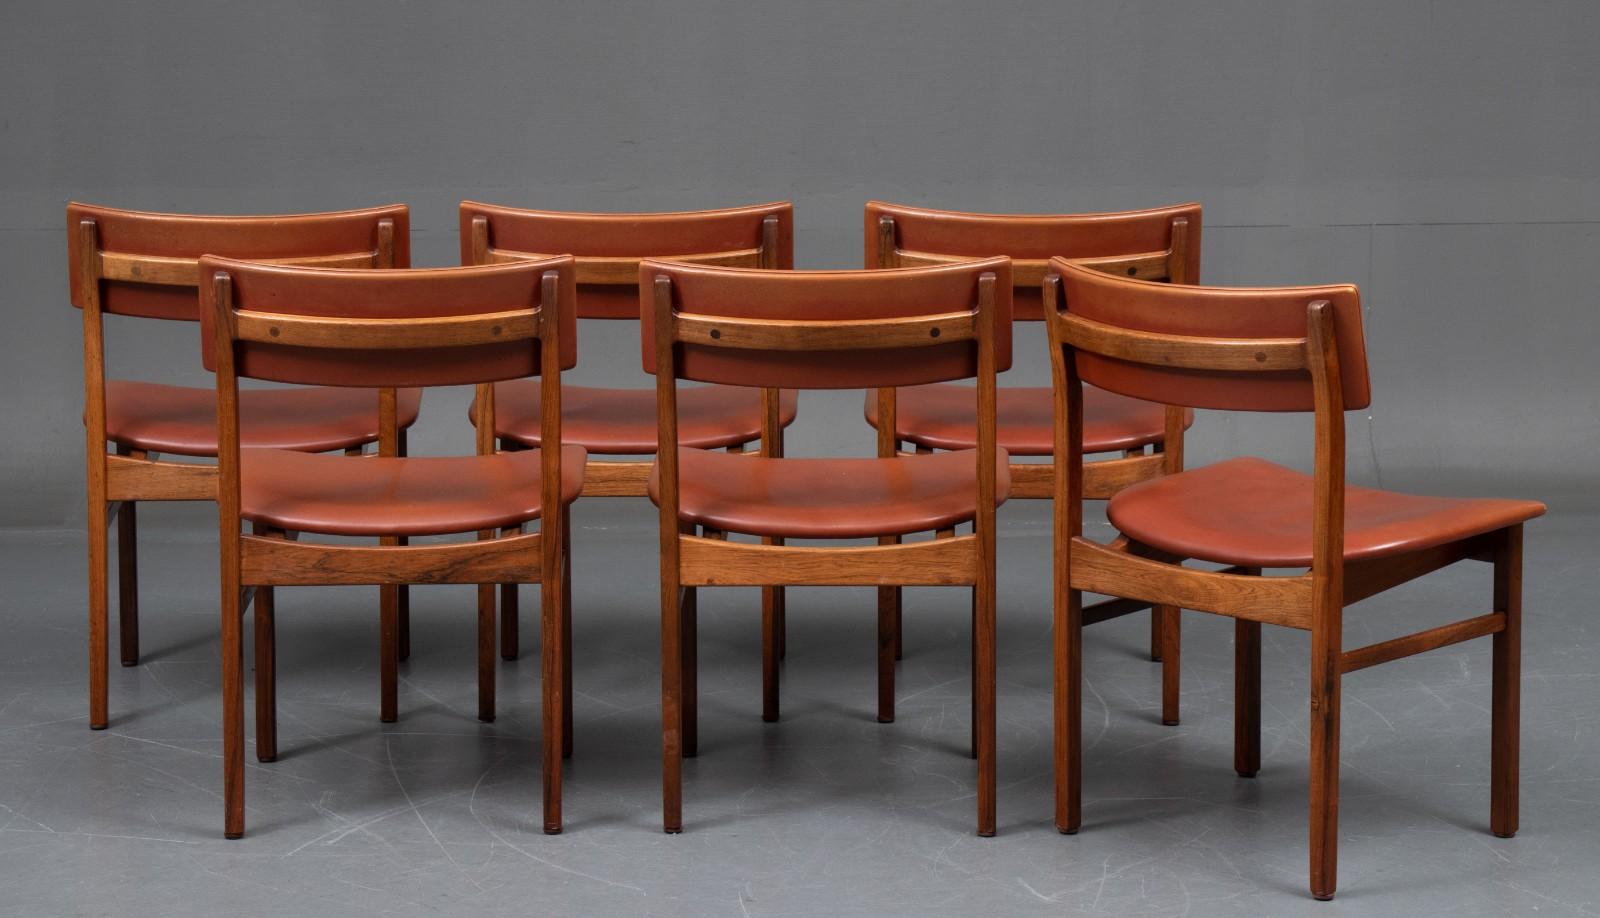 Ensemble de 6 chaises de salle à manger conçues par Kurt Östervig pour K.P. Fabricants de meubles Möller. Bois de rose et cuir cognac. Livré avec le certificat Cites, il n'est donc disponible qu'en Europe.

Kurt Østervig (1912-1986) a commencé sa